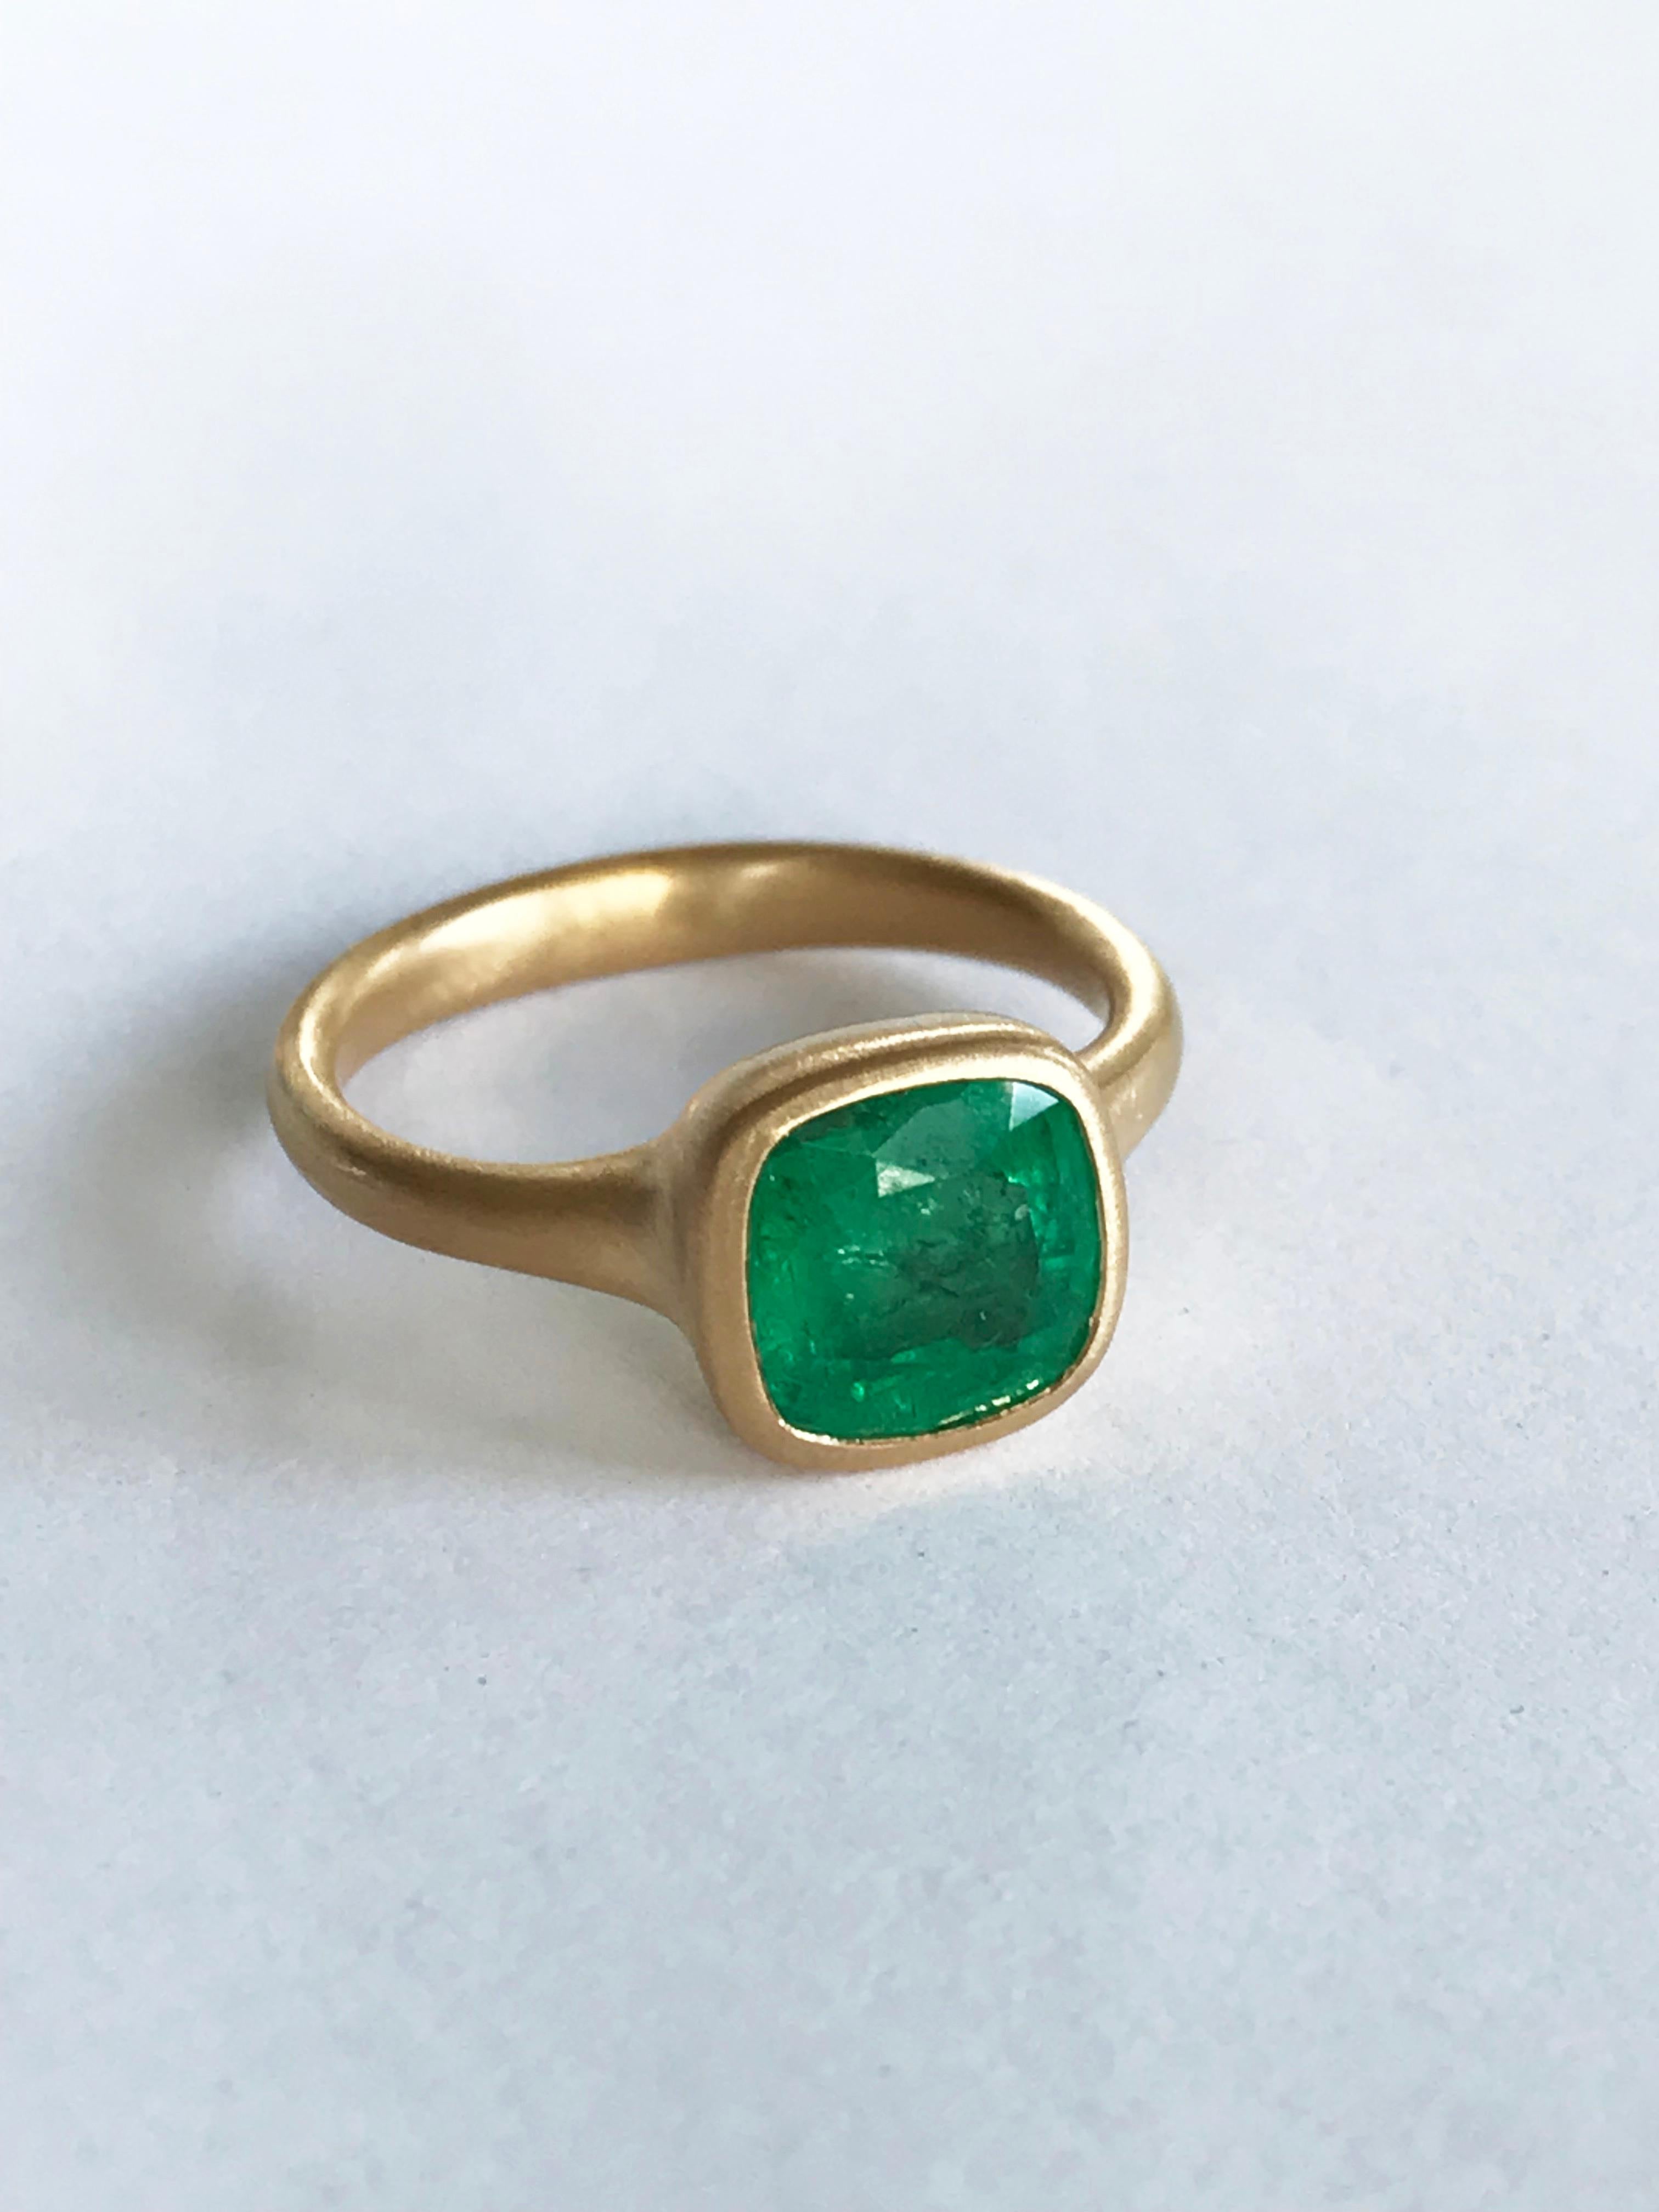 Dalben 2, 84 Carat Emerald Yellow Gold Ring 3